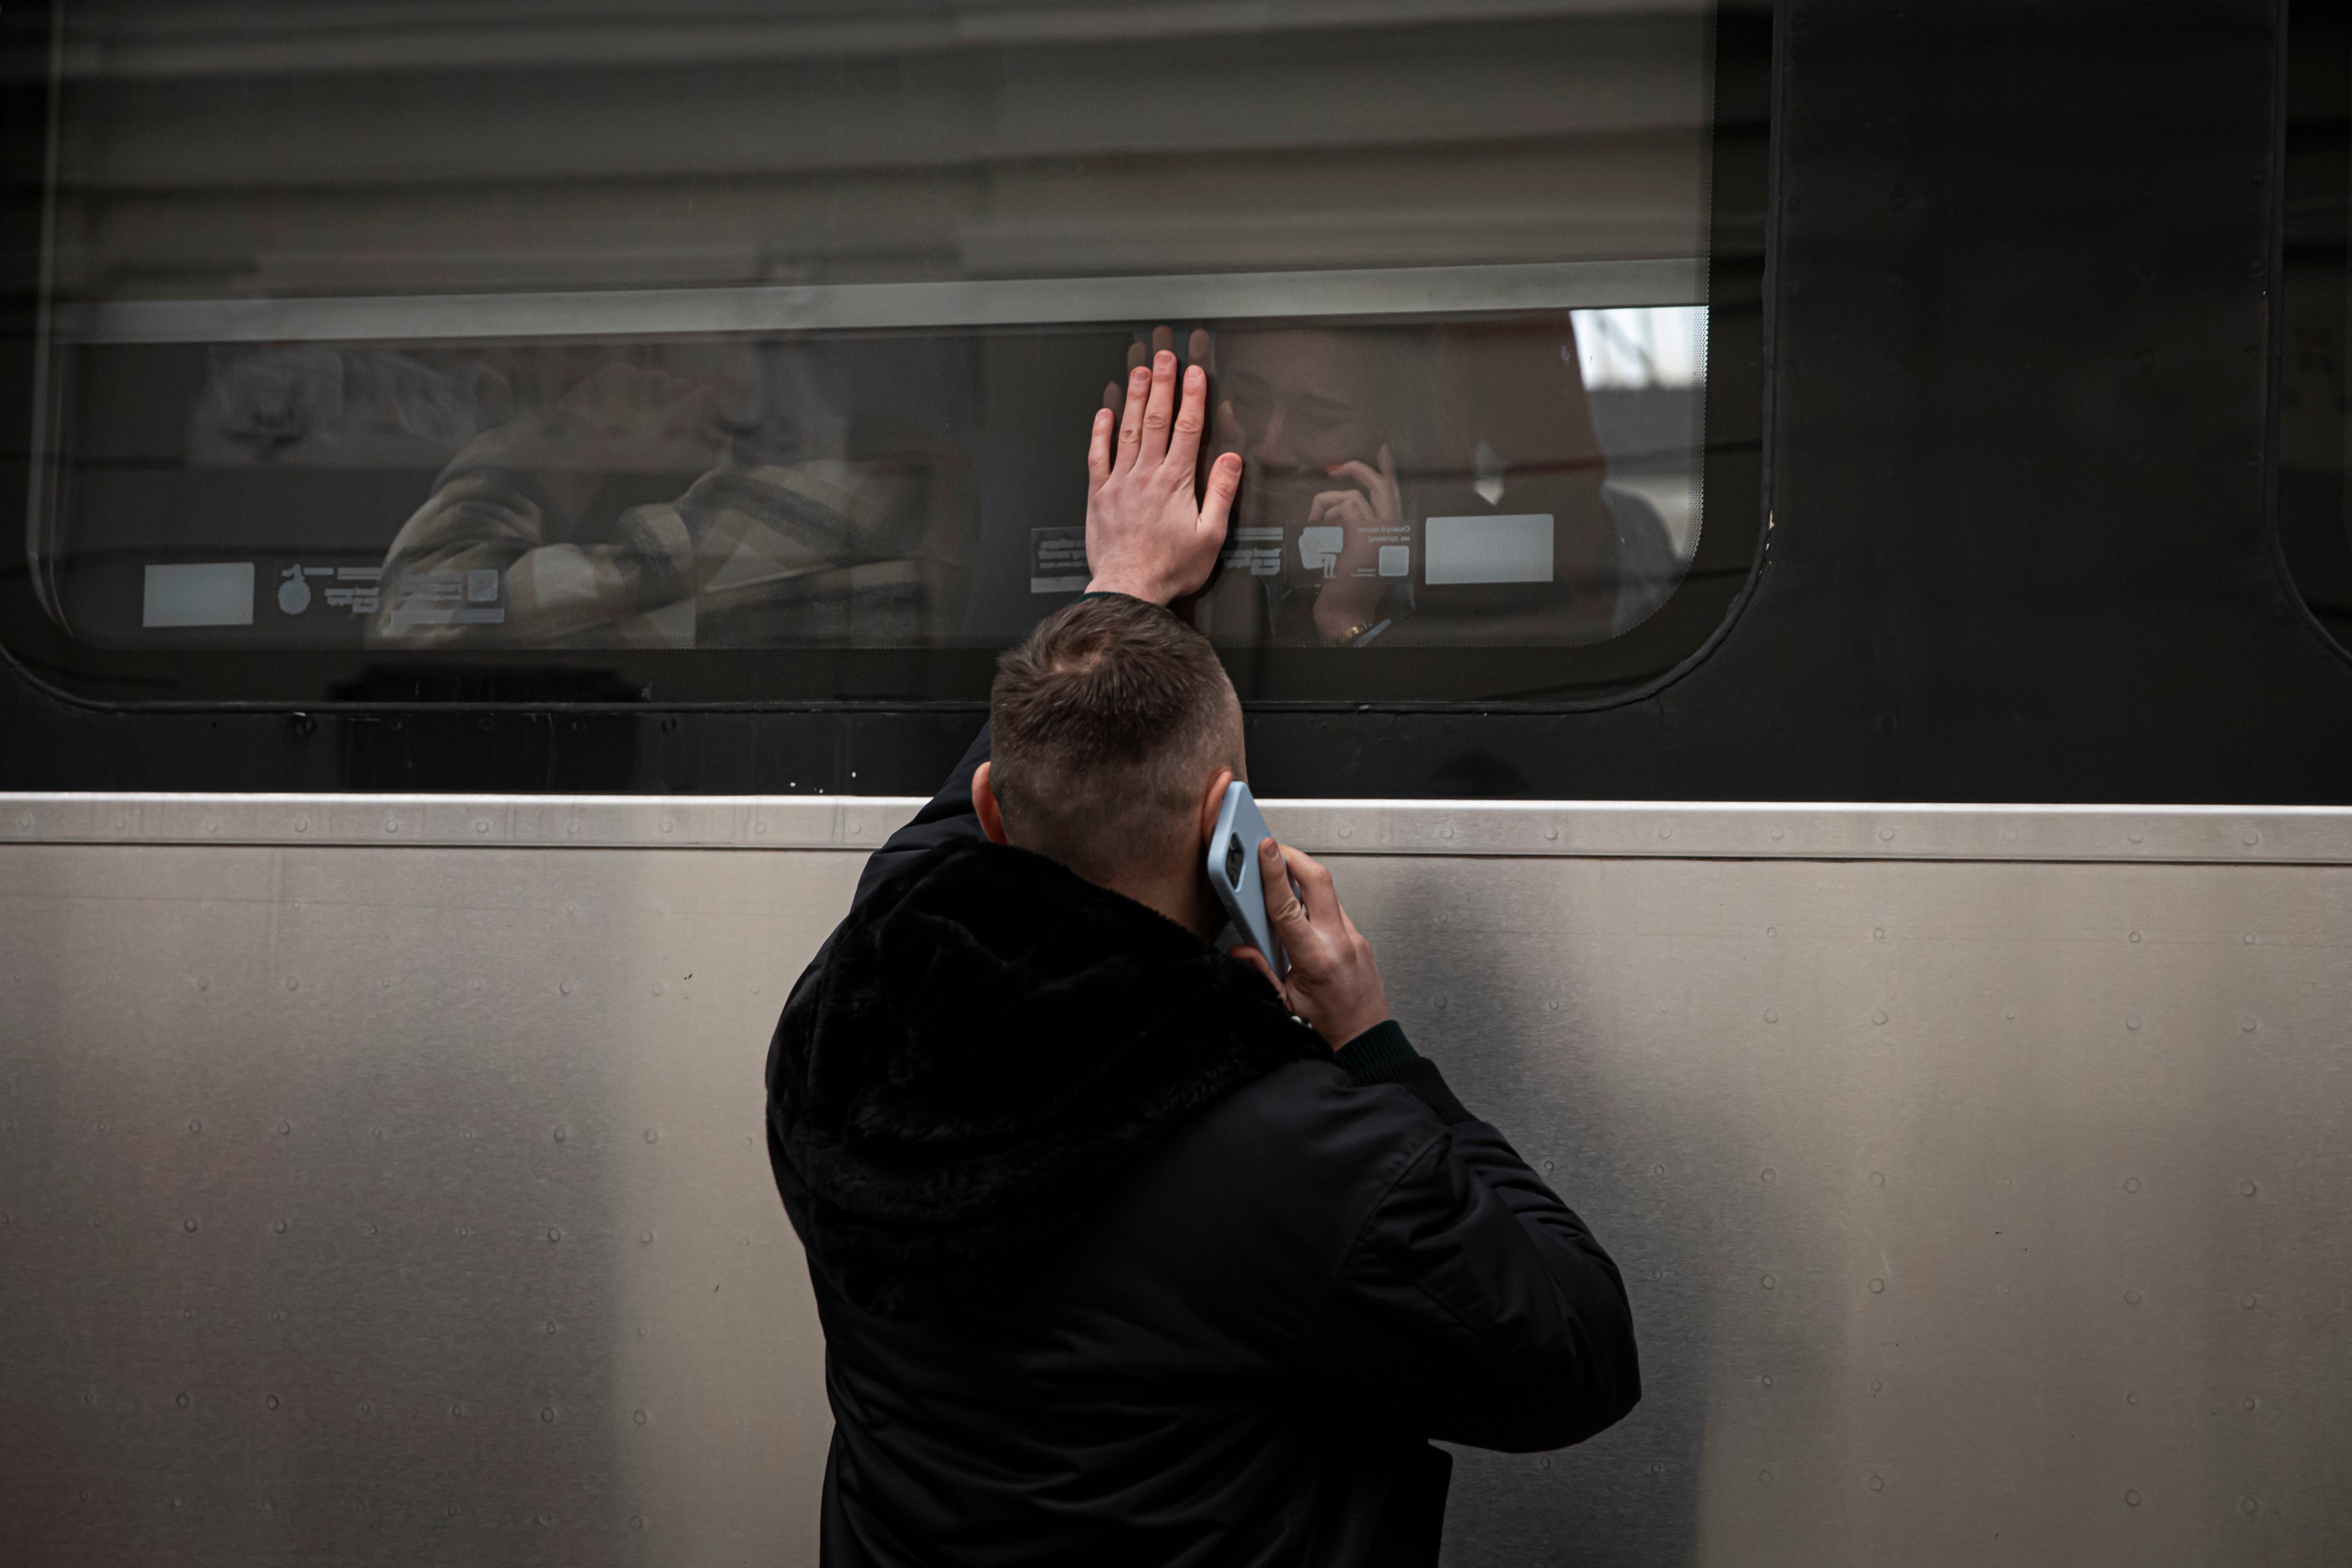 Reportagem na Estação de Comboios de Lviv, na Ucrânia. As pessoas nesta estação esperam e desesperam por um comboio que os leve para a Polónia. Os homens têm de ficar devido à Lei Marcial que proíbe os homens entre dos 18 e os 60 anos de saírem do país. A Rússia, a mando do seu presidente, Vladimir Putin, invadiu a Ucrânia no passado dia 24 de fevereiro de 2022. Lviv, Ucrânia, 25 de fevereiro de 2022. JOÃO PORFÍRIO/OBSERVADOR